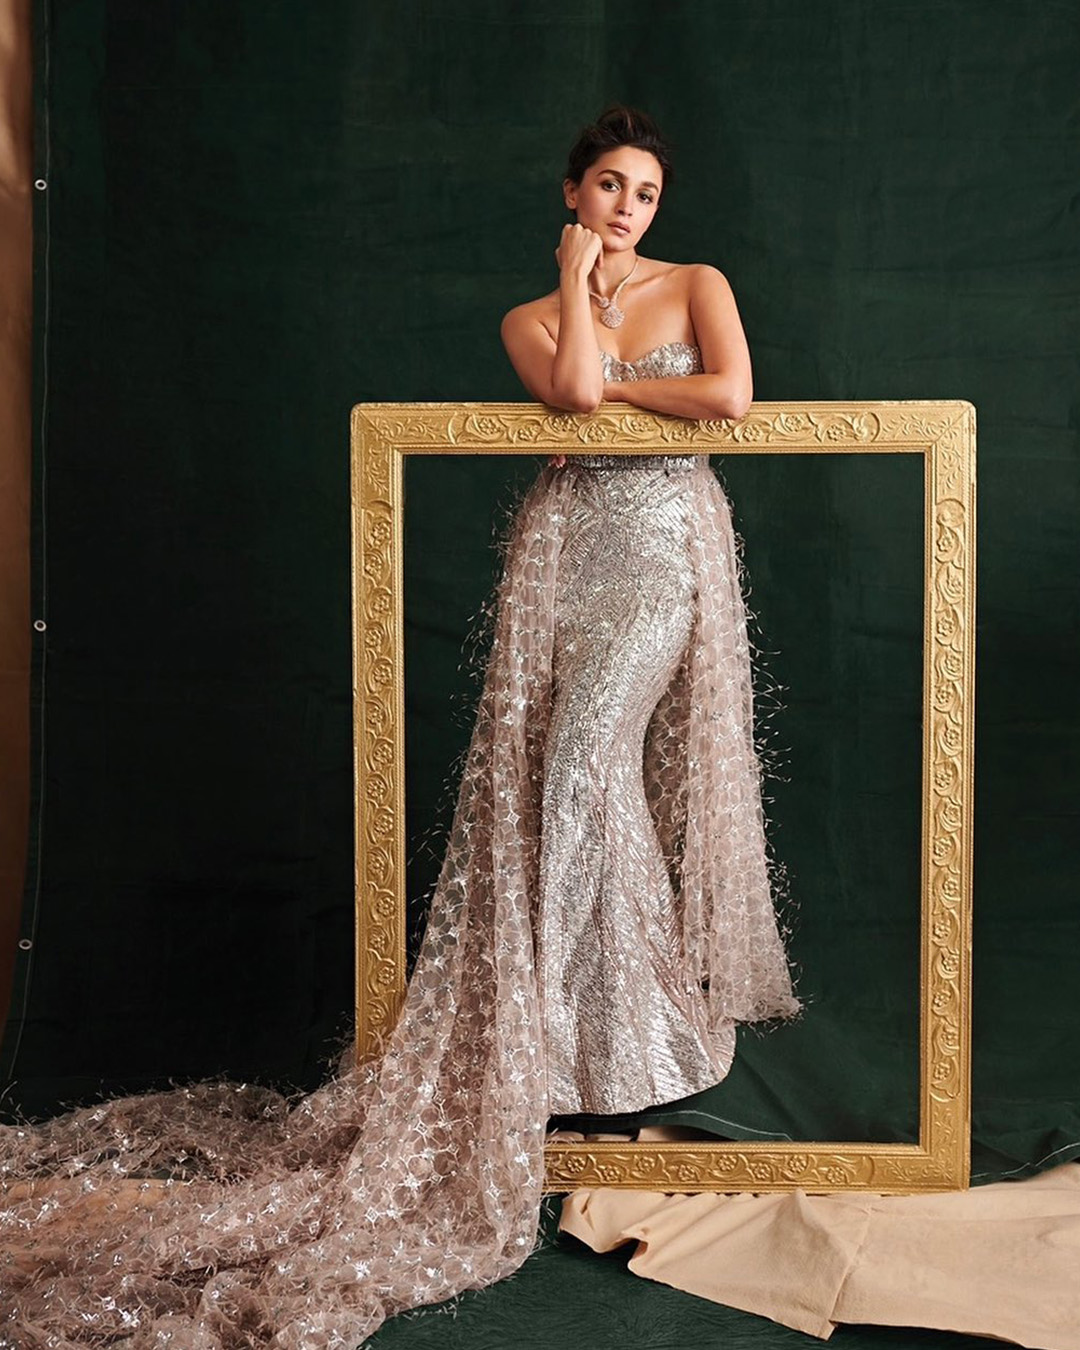 Aspiring designer creates her own prom dress - L'Observateur | L'Observateur